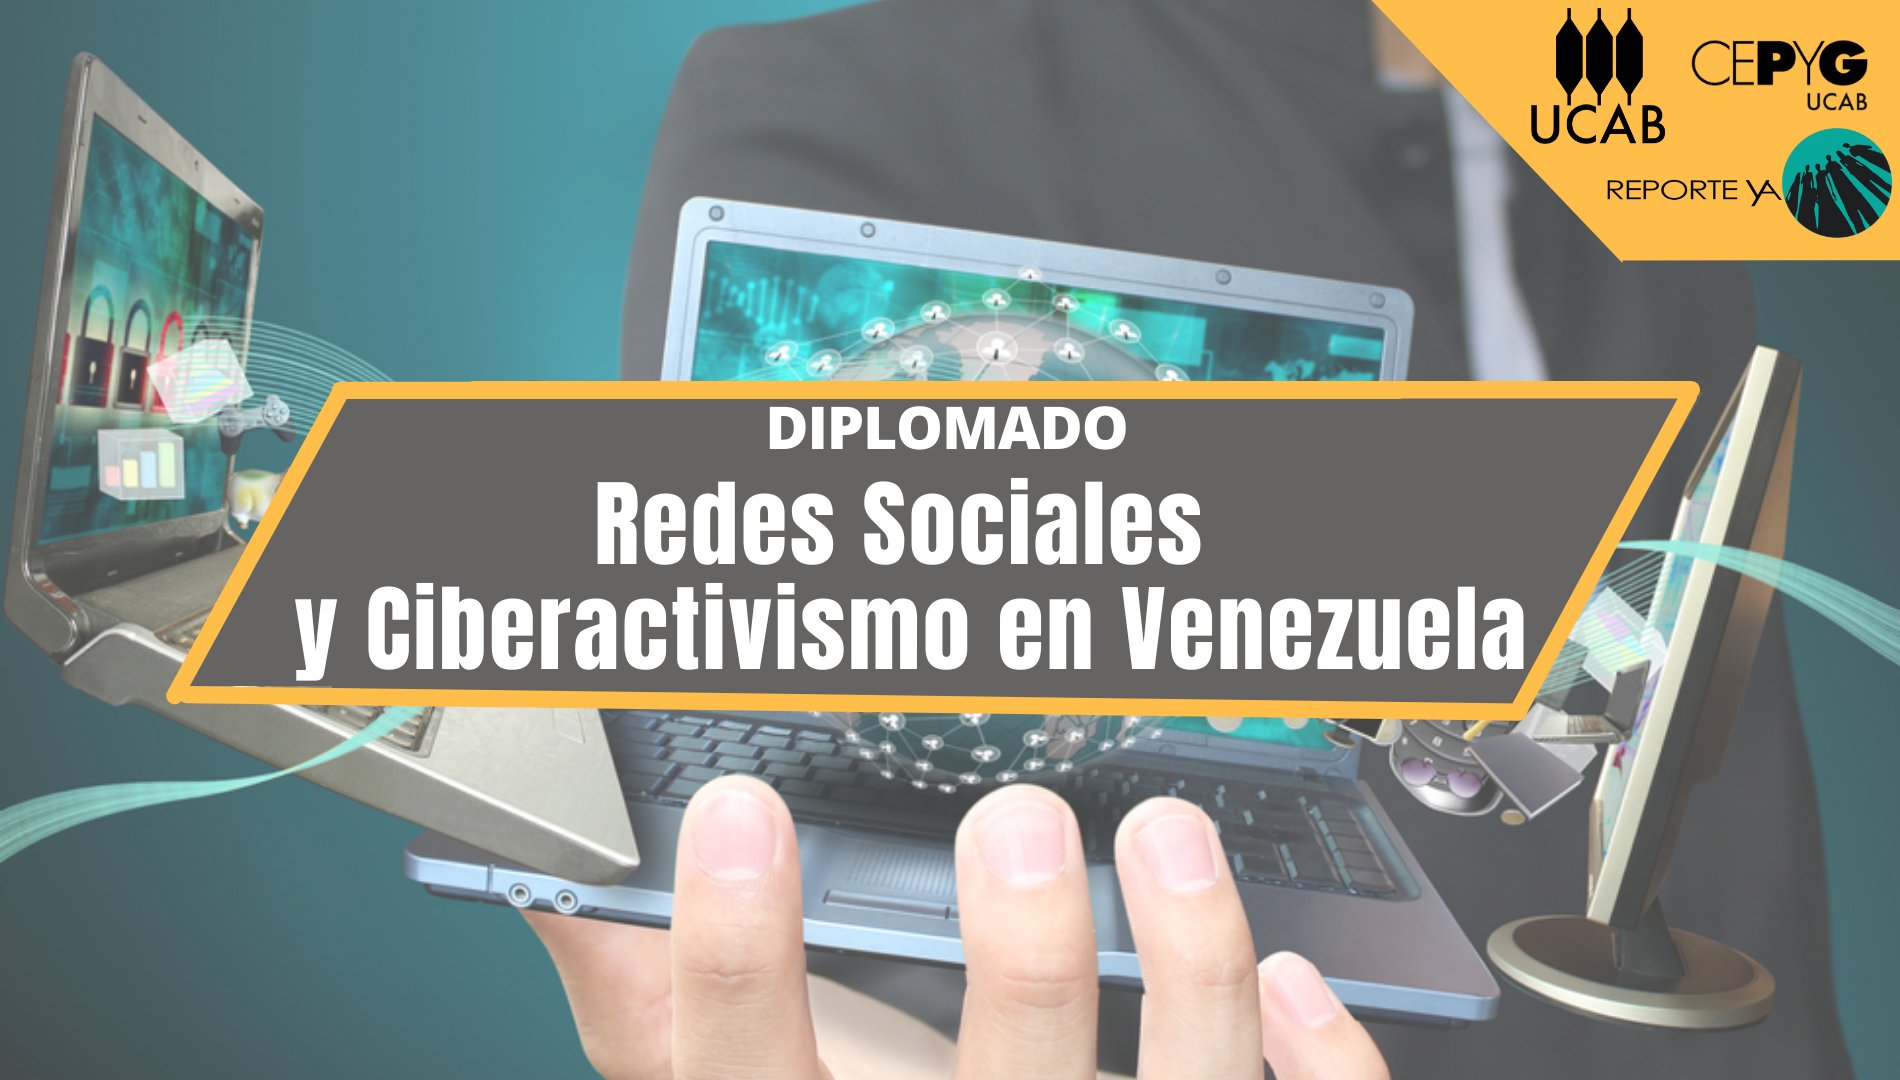 Diplomado en Redes Sociales y Ciberactivismo en Venezuela feature image